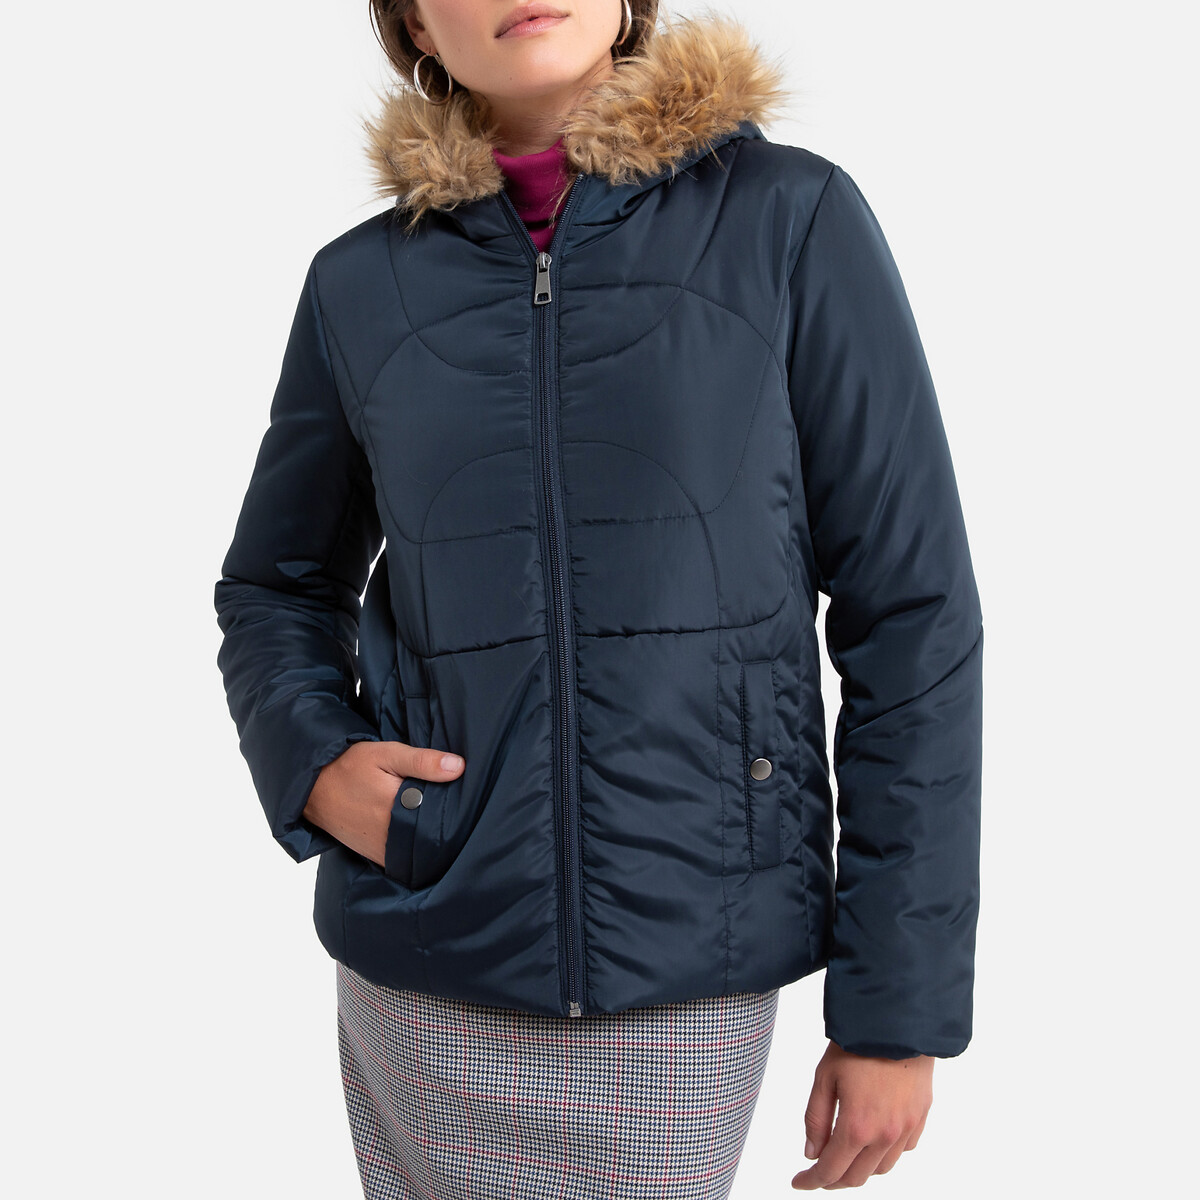 Куртка La Redoute Короткая с капюшоном зимняя модель 52 (FR) - 58 (RUS) синий, размер 52 (FR) - 58 (RUS)